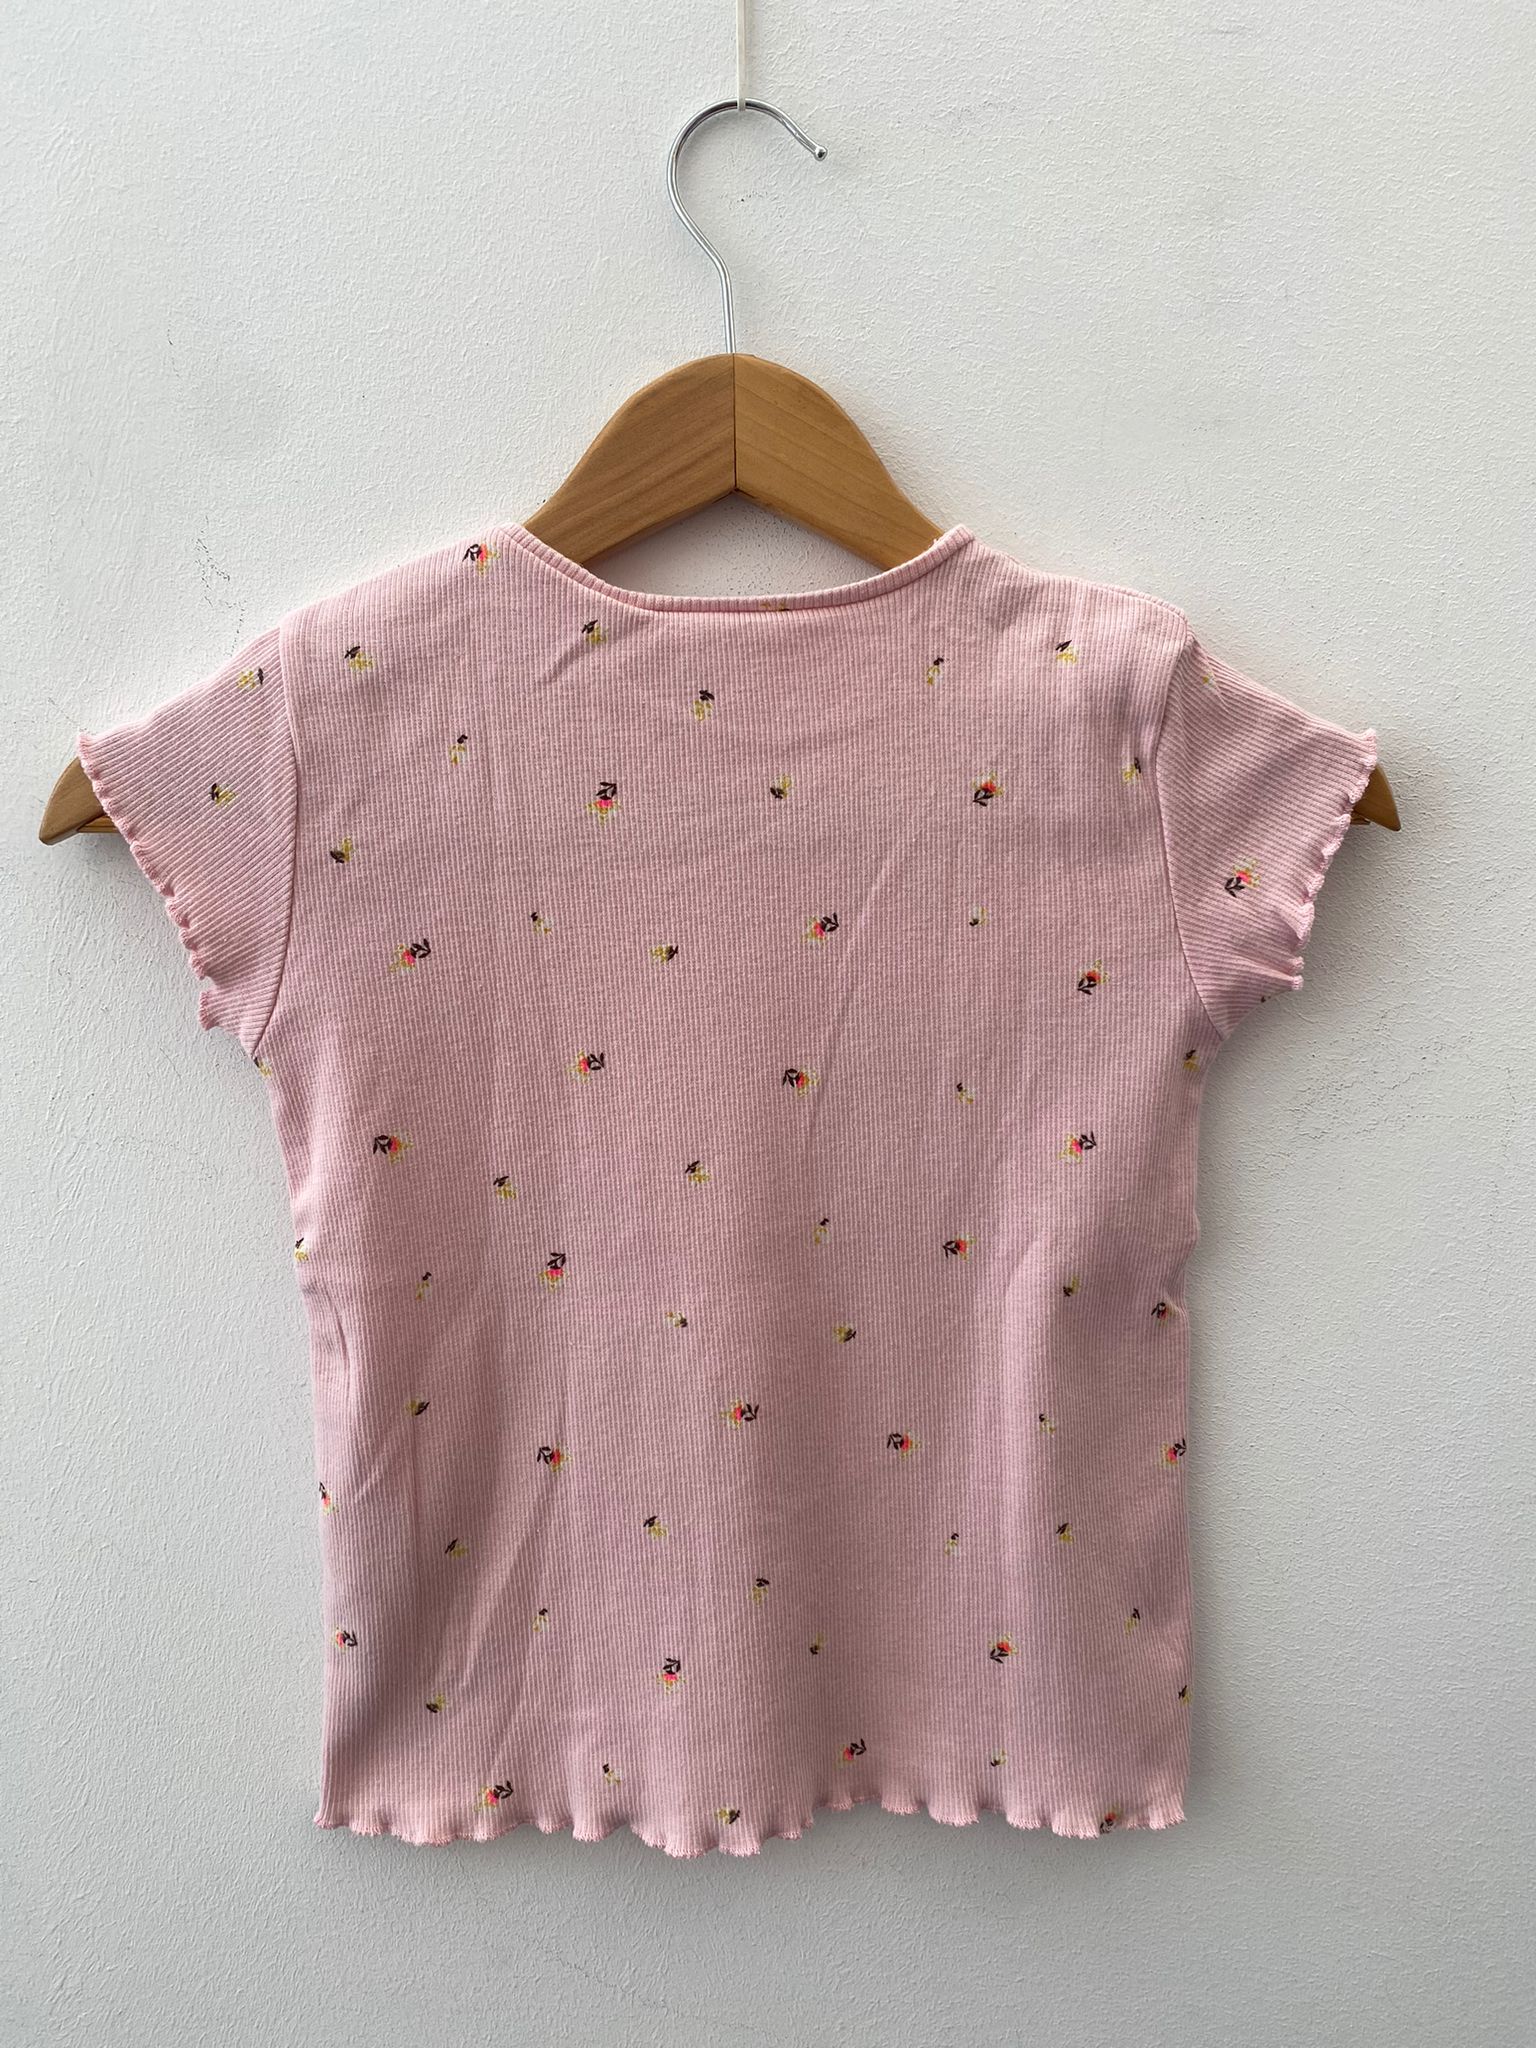 Zara Camiseta niña rosa estampada – The Class Room